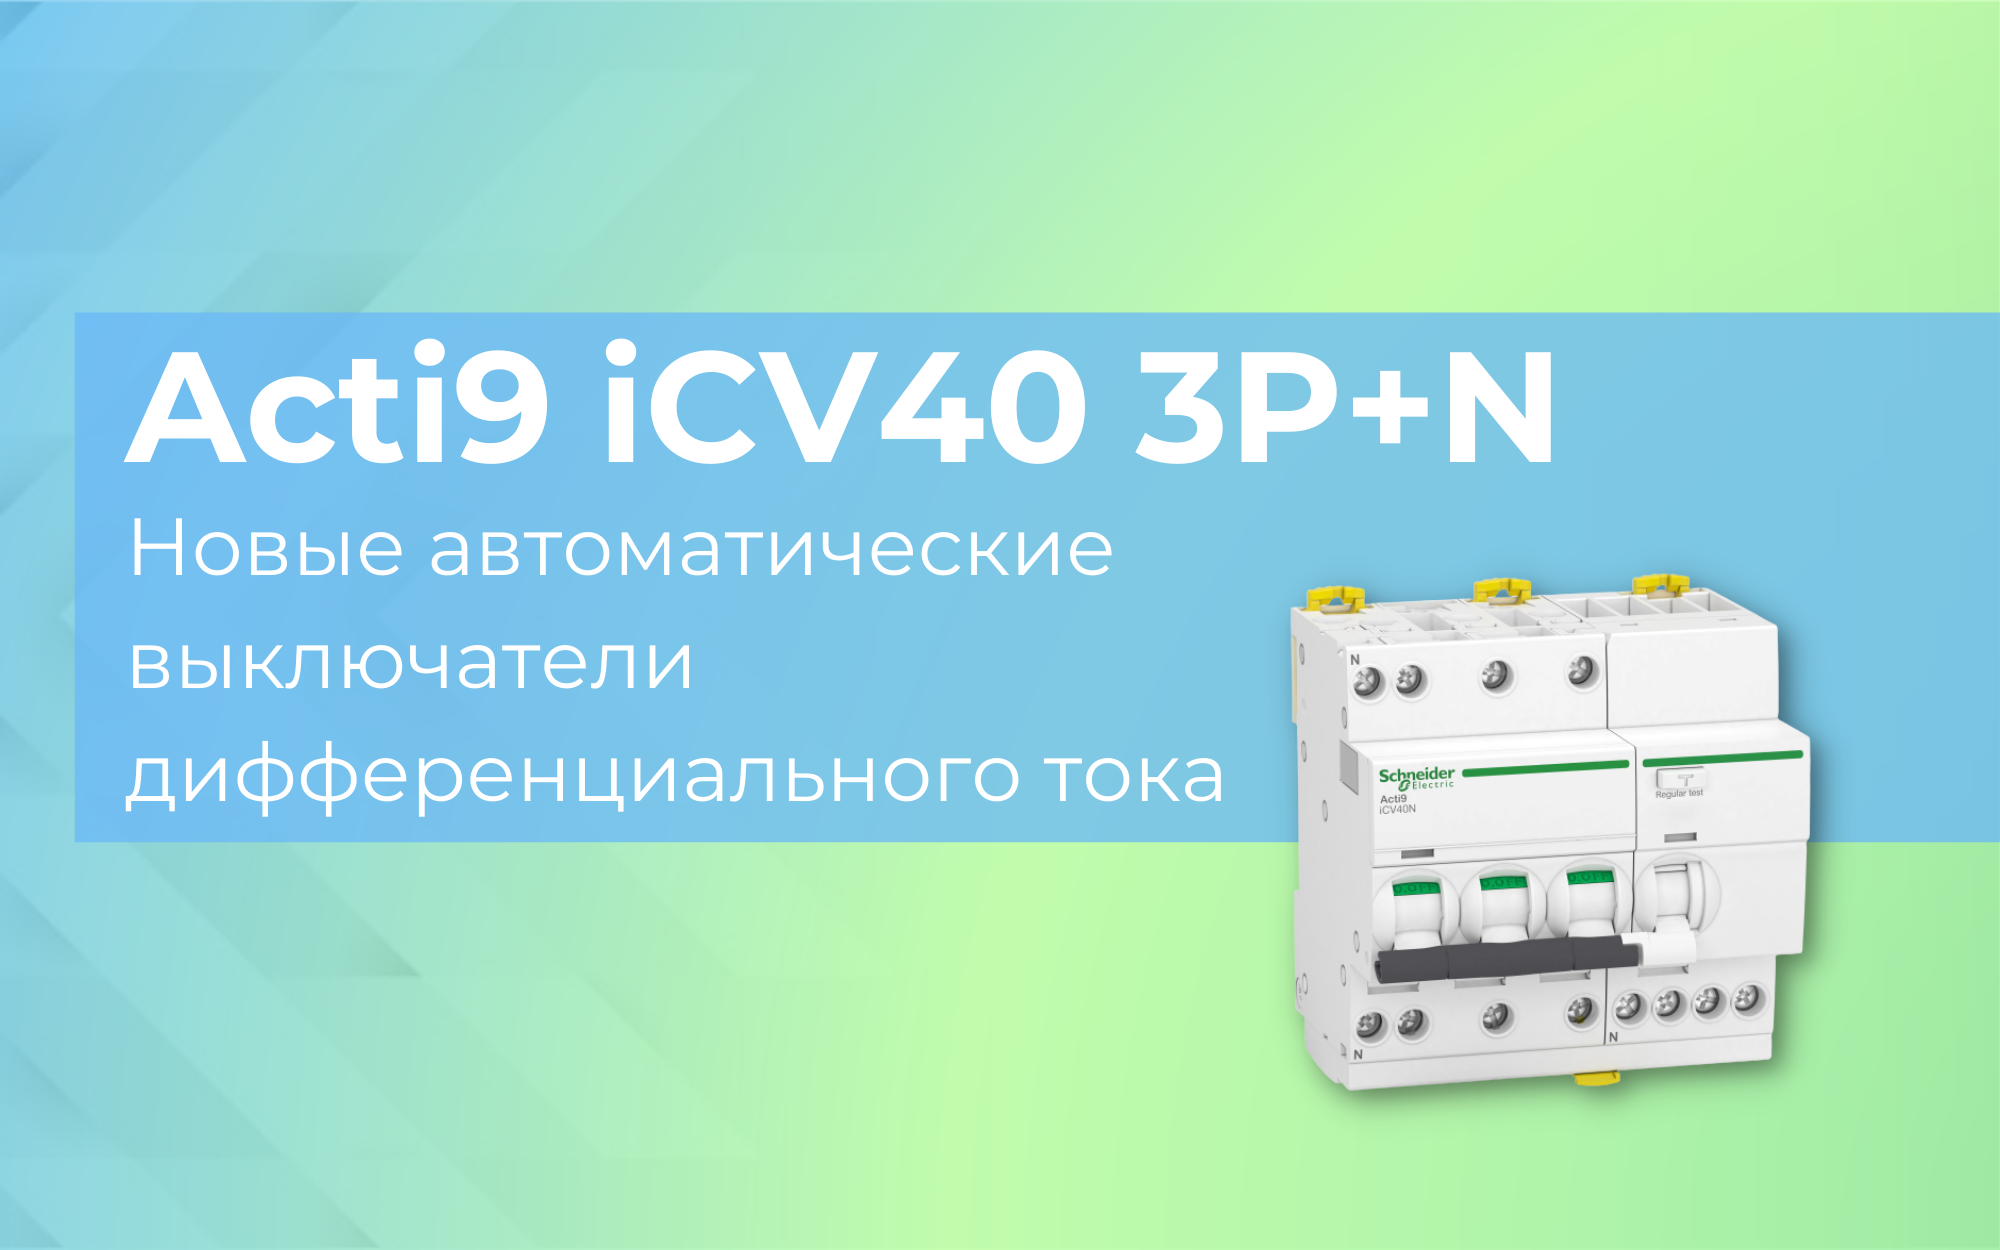 Acti9 iCV40 3P+N - новые автоматические выключатели дифференциального тока<